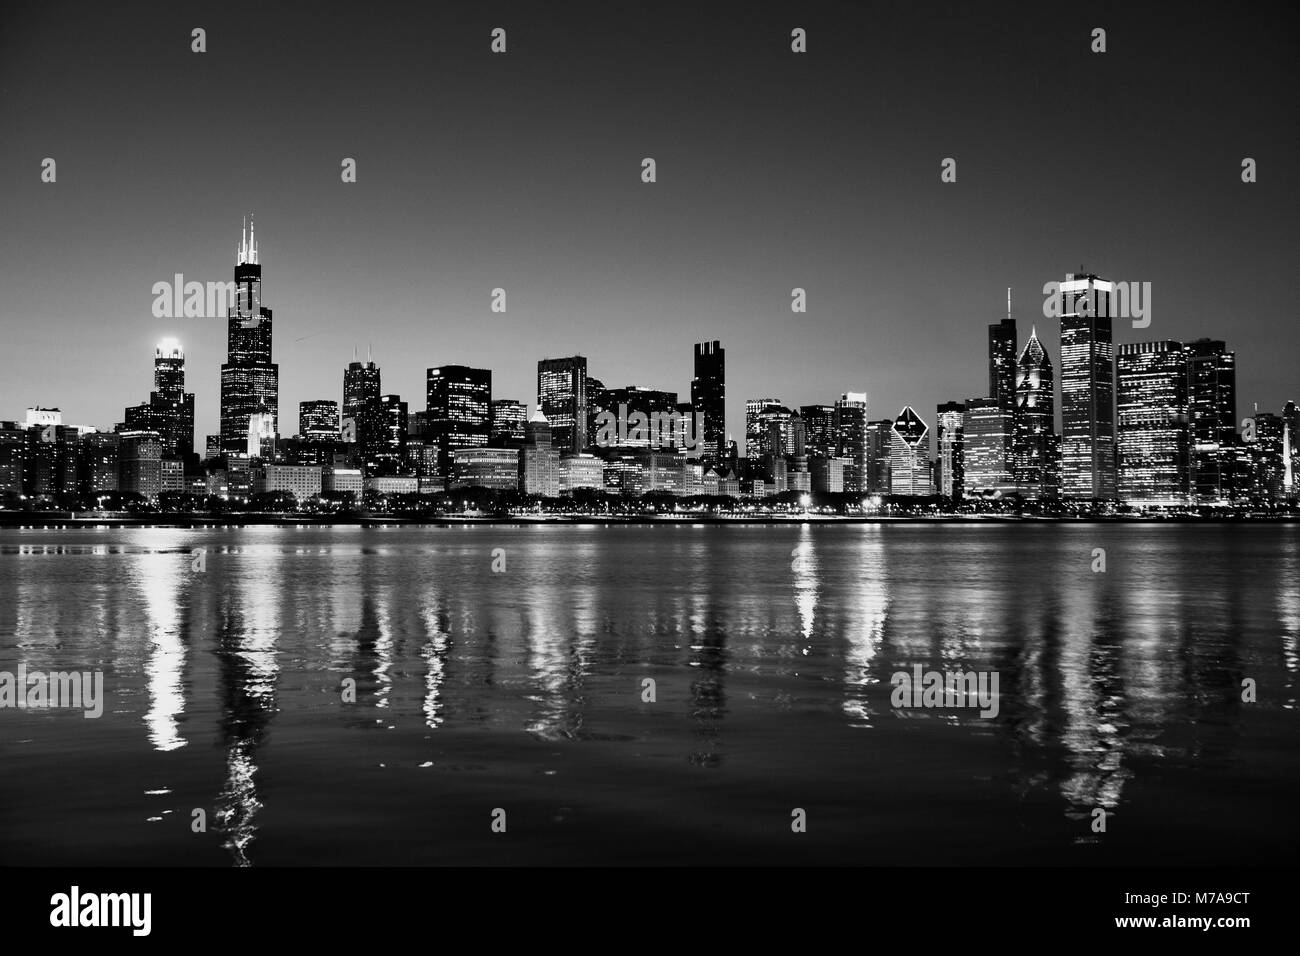 Chicago, Illinois, USA Skyline nuit sur le lac Michigan au crépuscule avec les villes Lumières se reflétant dans l'eau. Banque D'Images